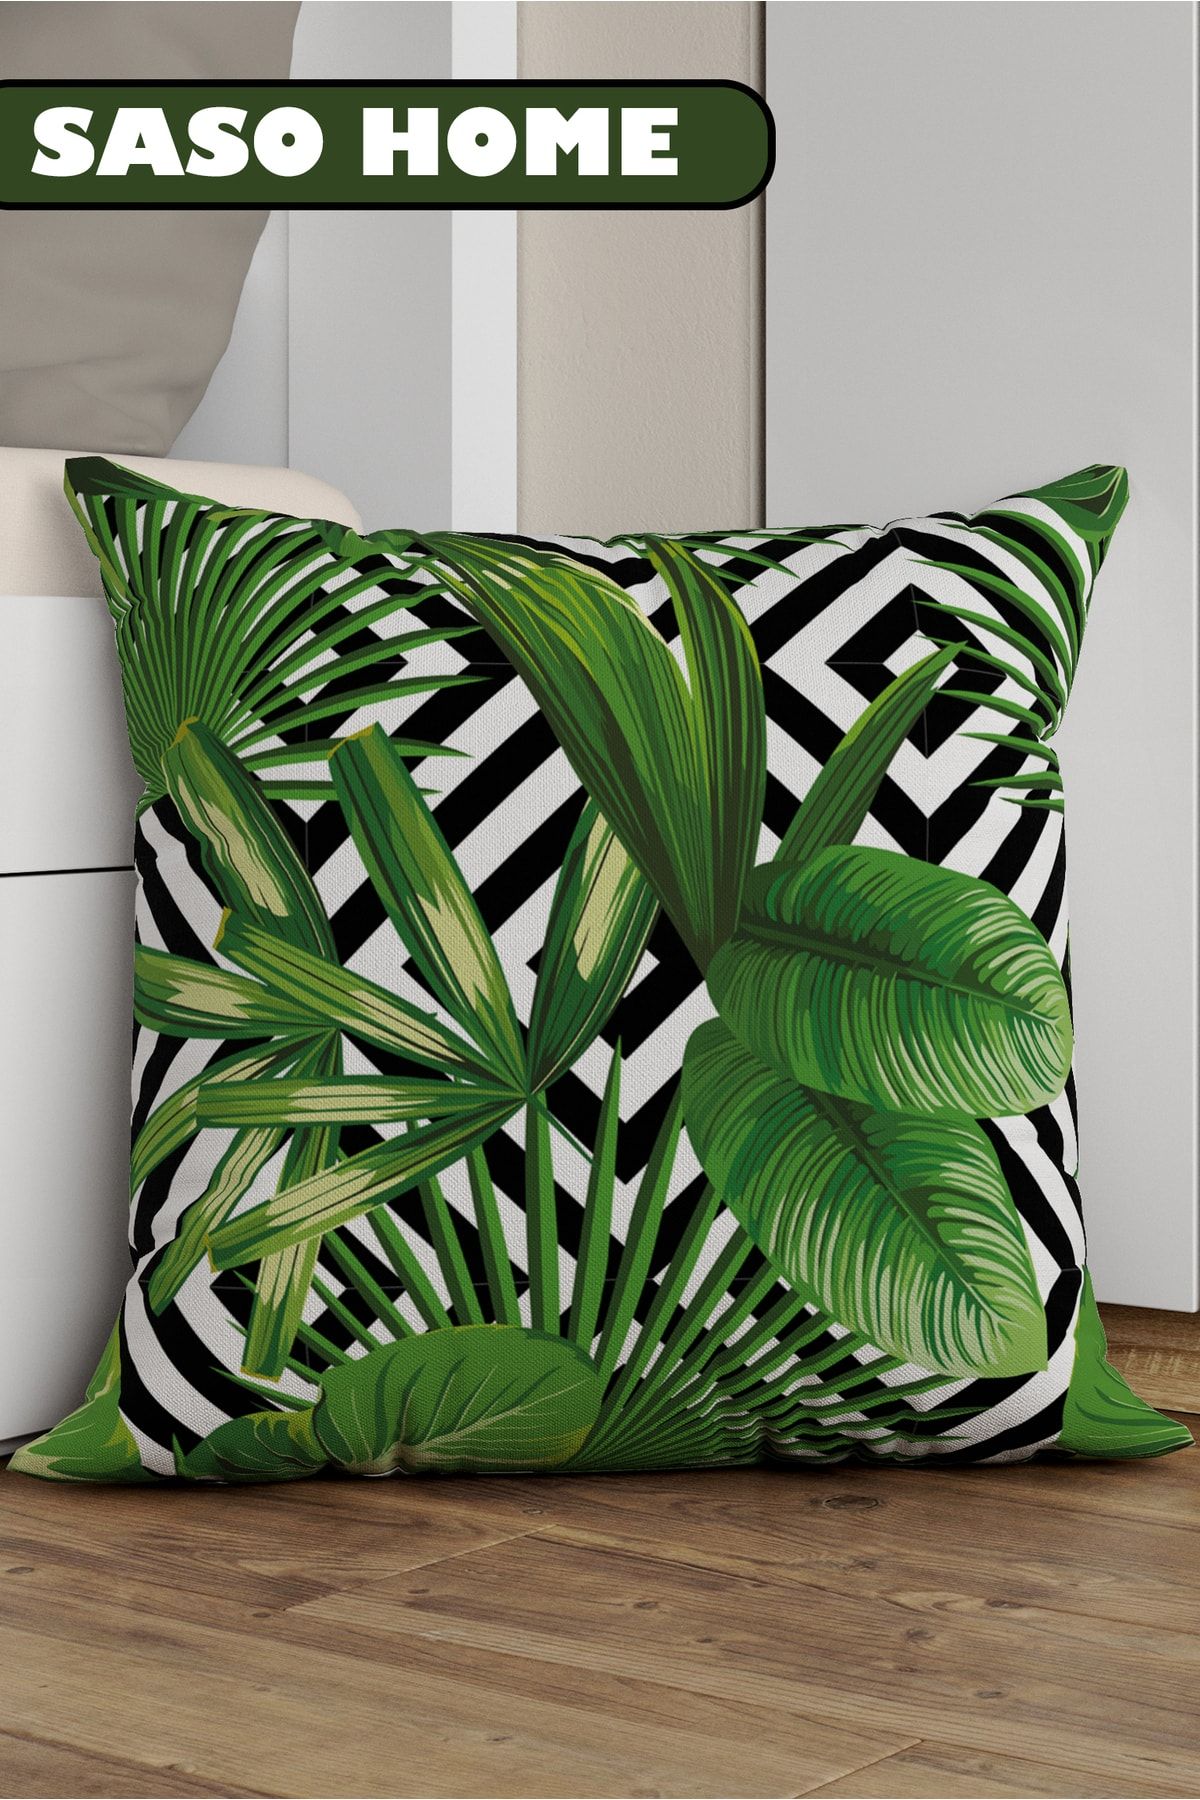 SasoHome Tropikal Palmiye Yaprak Desenli Dekoratif Hediyelik Kırlent - Yastık Kılıfı